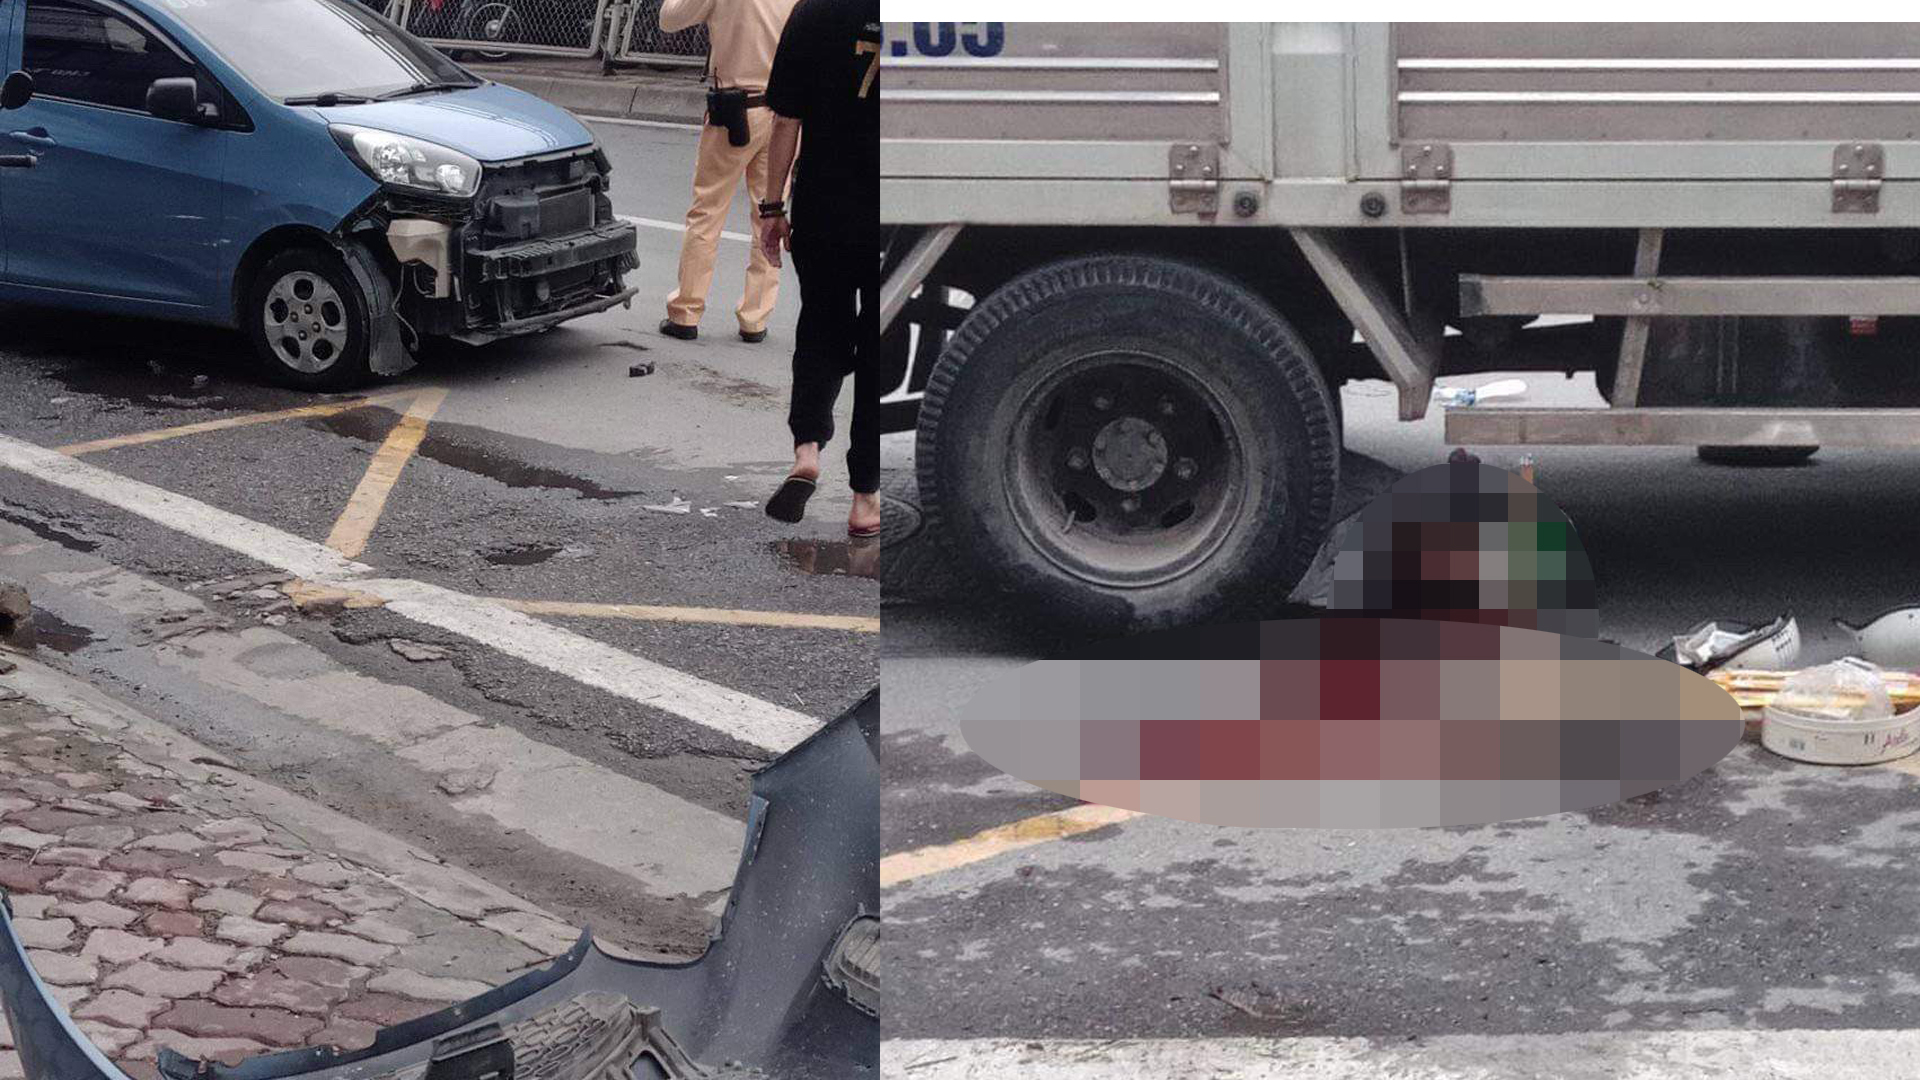 Xã hội - Hà Nội: Va chạm với ô tô do nữ tài xế cầm lái, 1 người tử vong